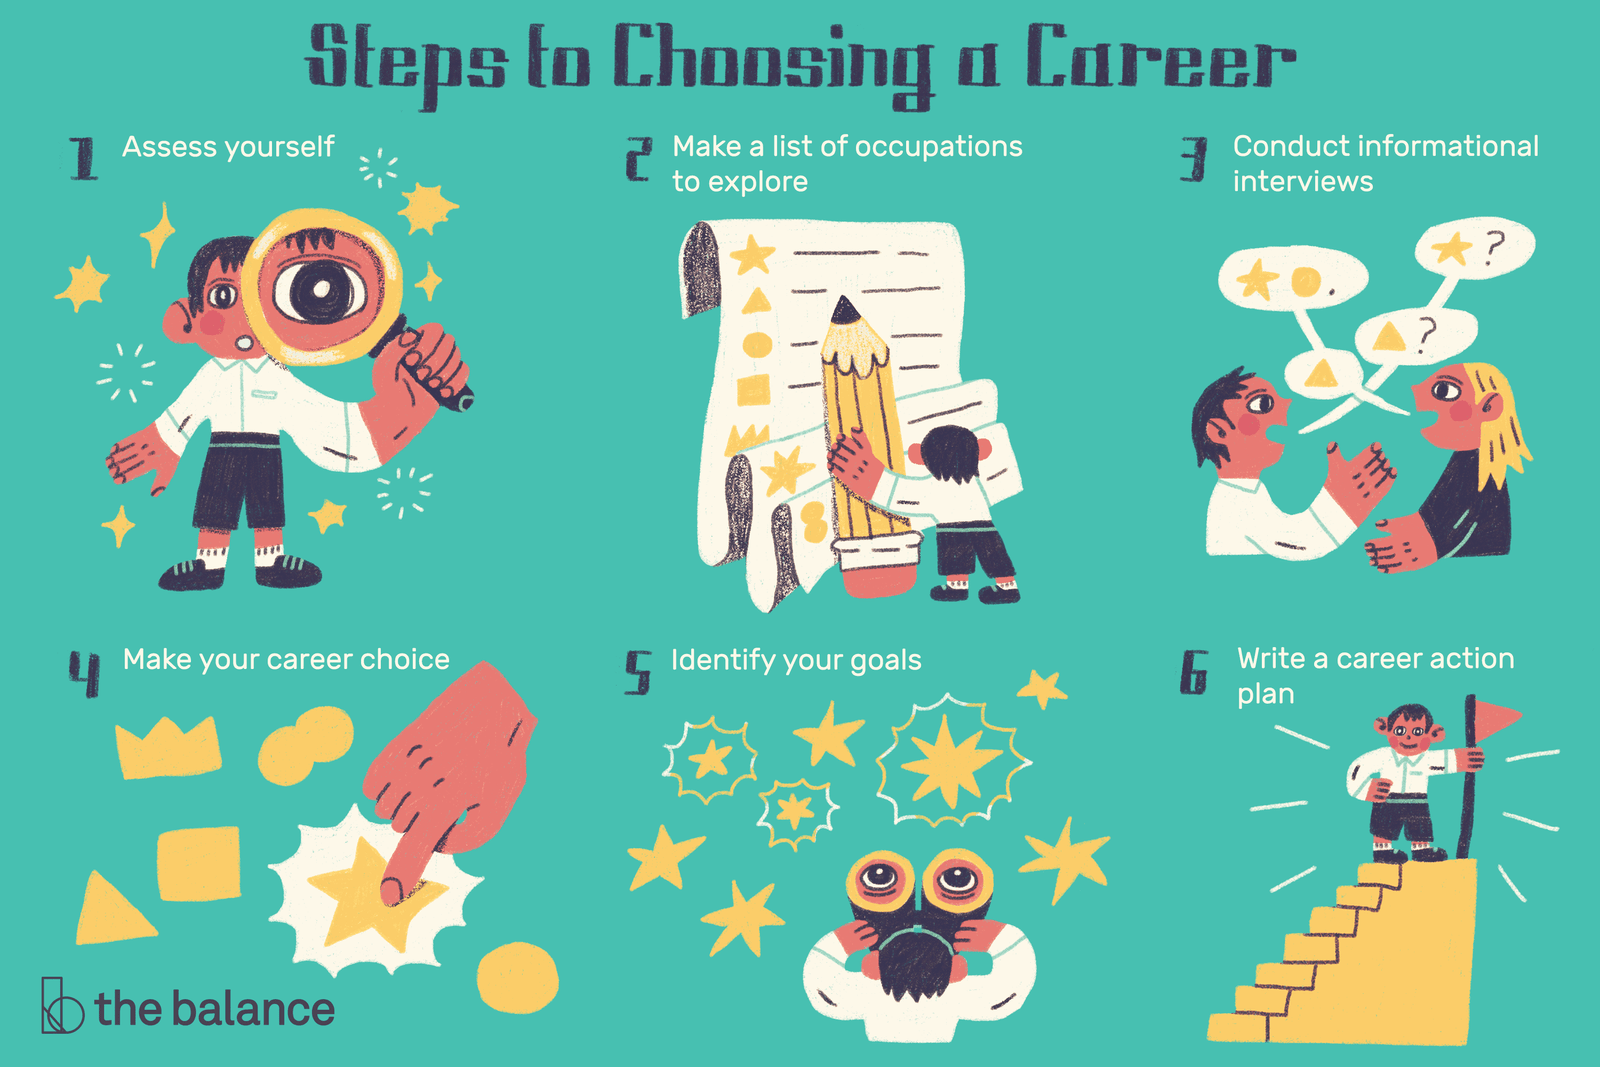 How To choose a career you Like?